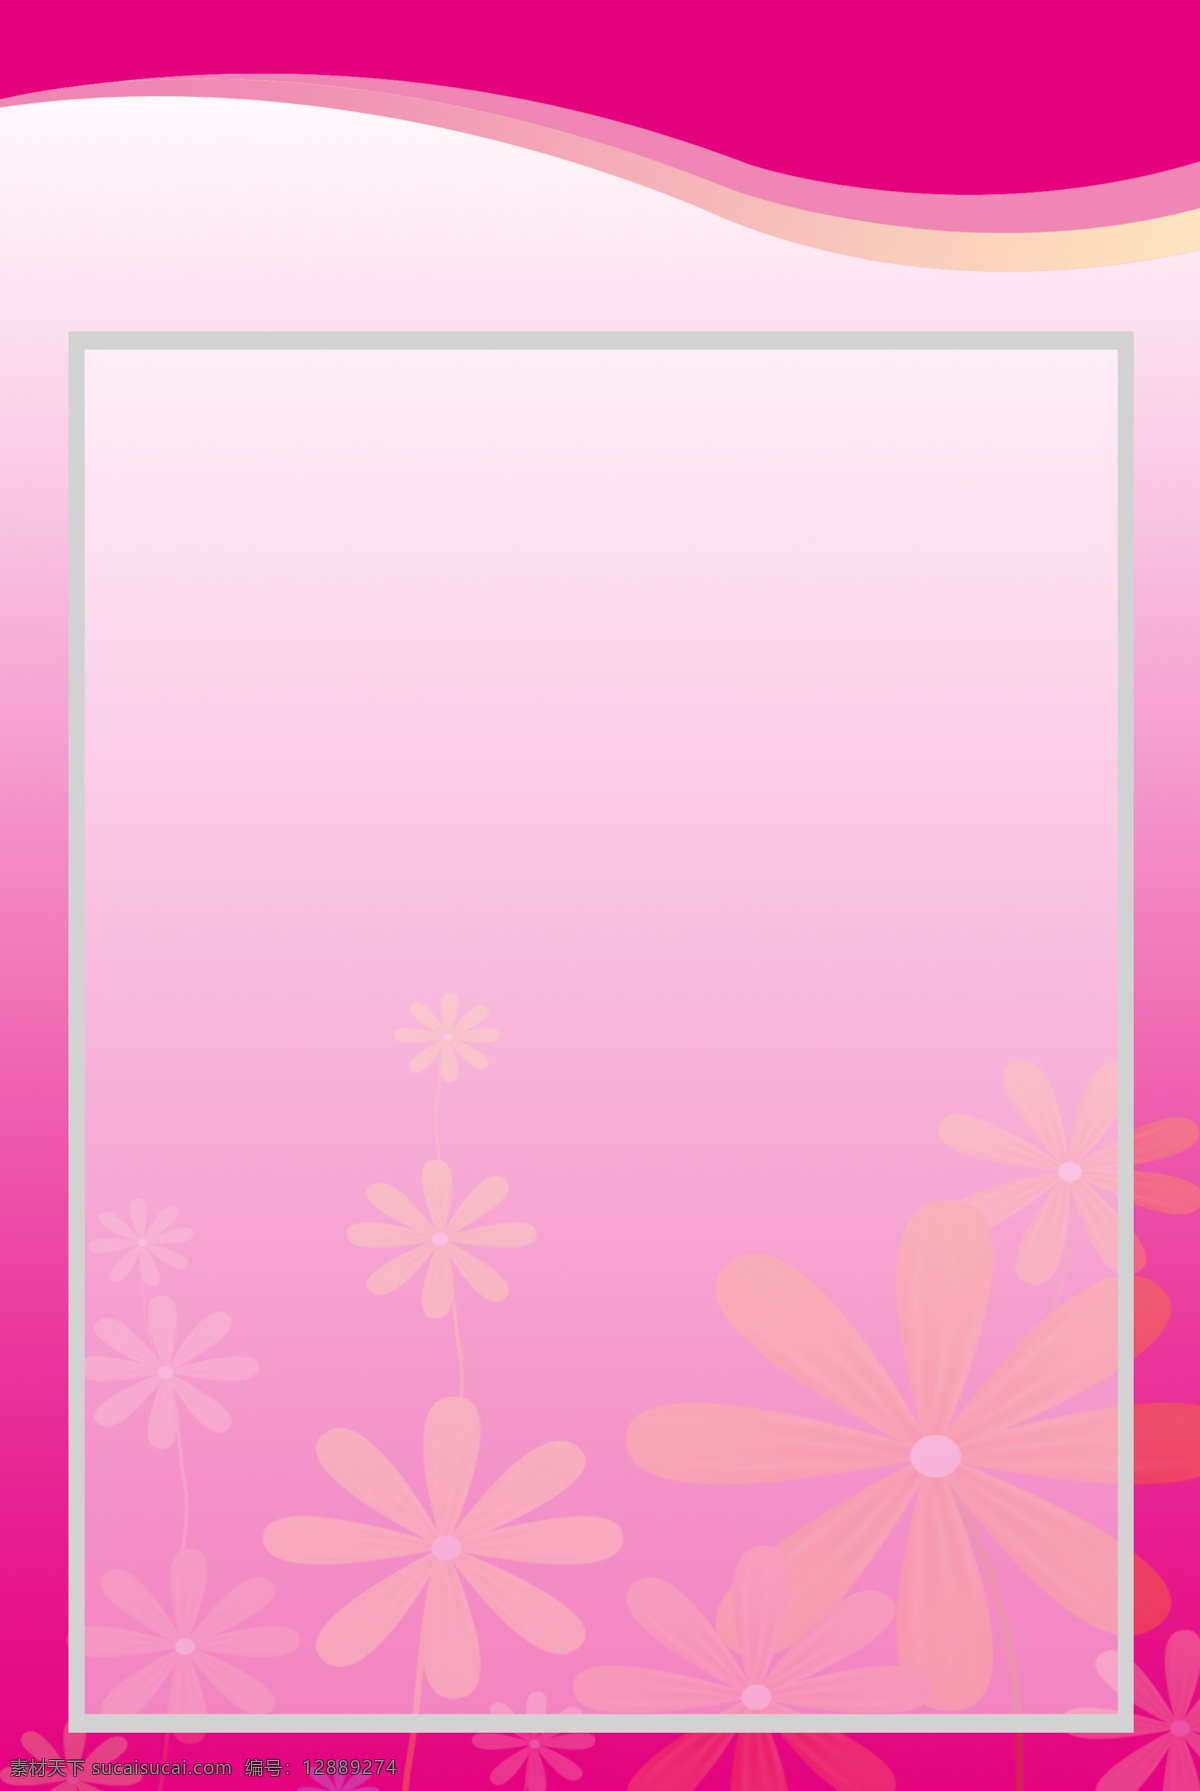 粉色背景图 底 粉底 花底 边框底 粉红色 背景底纹 底纹边框